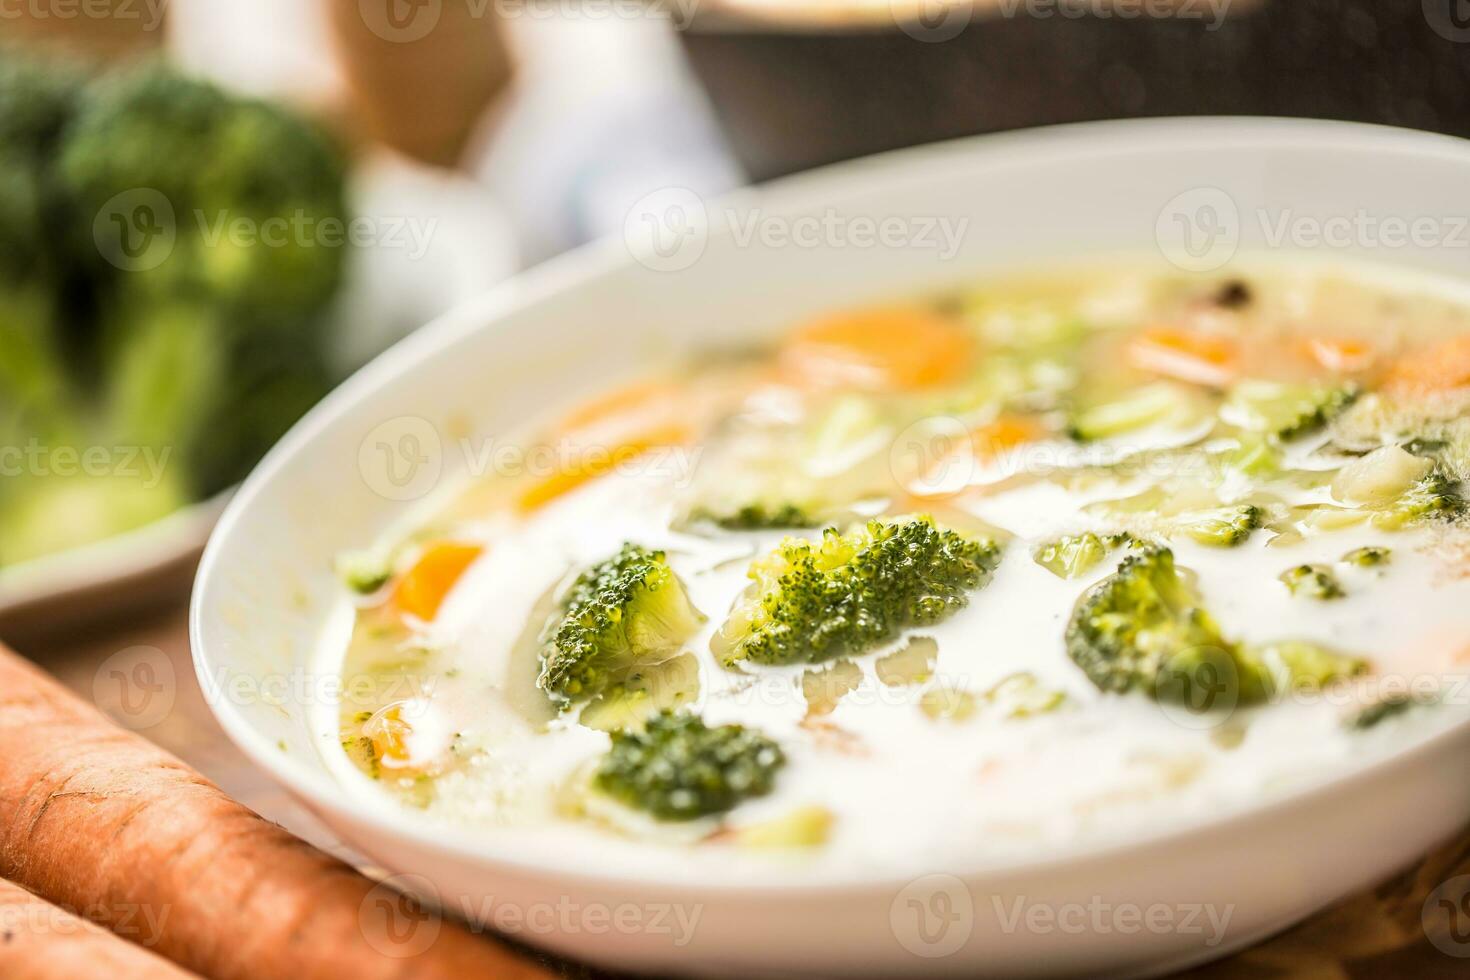 vegetal sopa desde brócoli Zanahoria cebolla y otro ingredientes. sano vegetariano comida y comidas foto